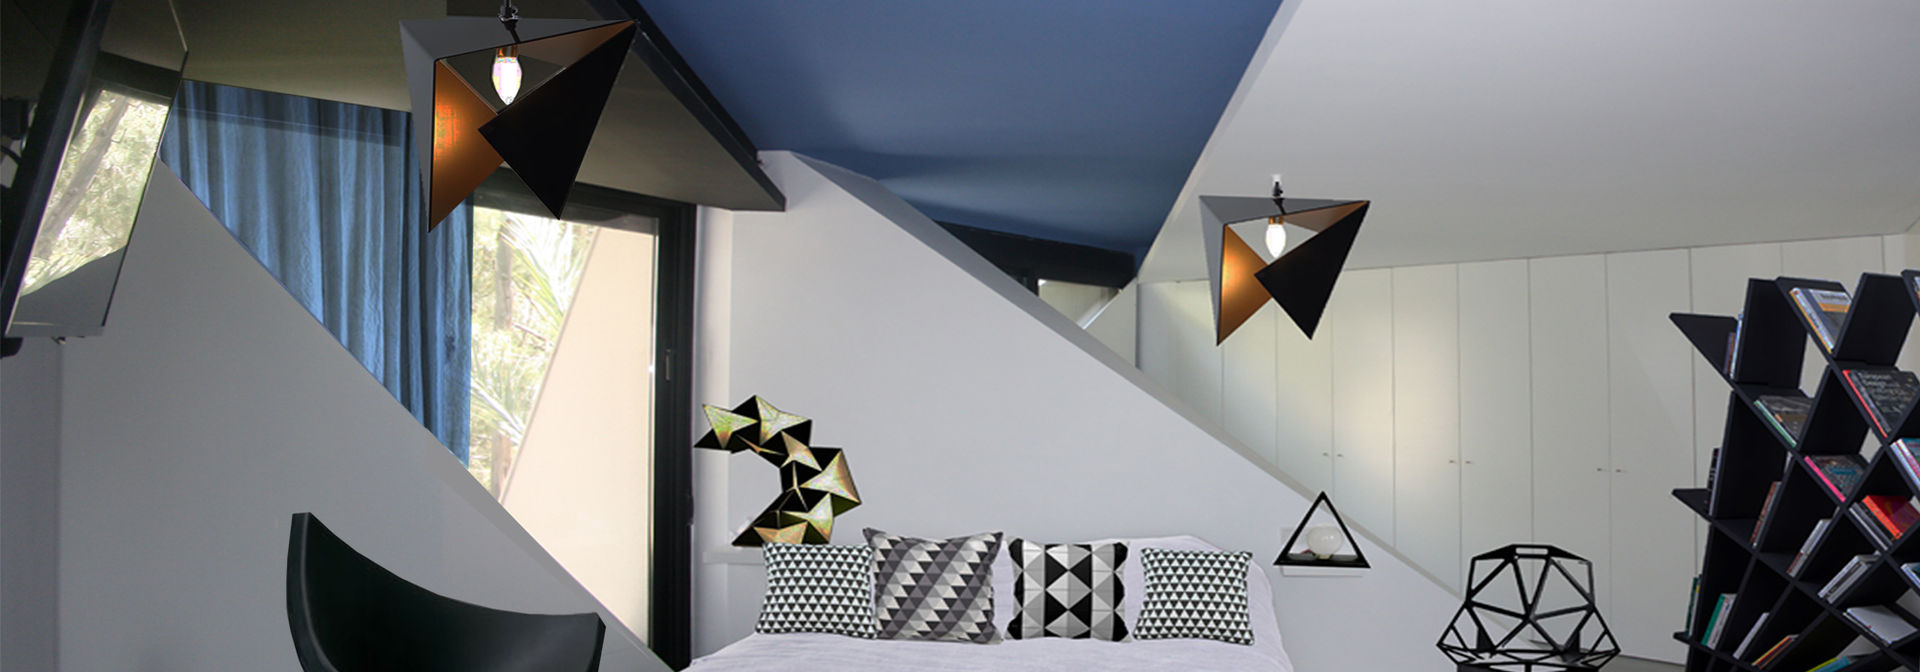 PROYECTO 5, LOWDECOR LOWDECOR Dormitorios de estilo minimalista Textil Ámbar/Dorado Camas y cabeceras